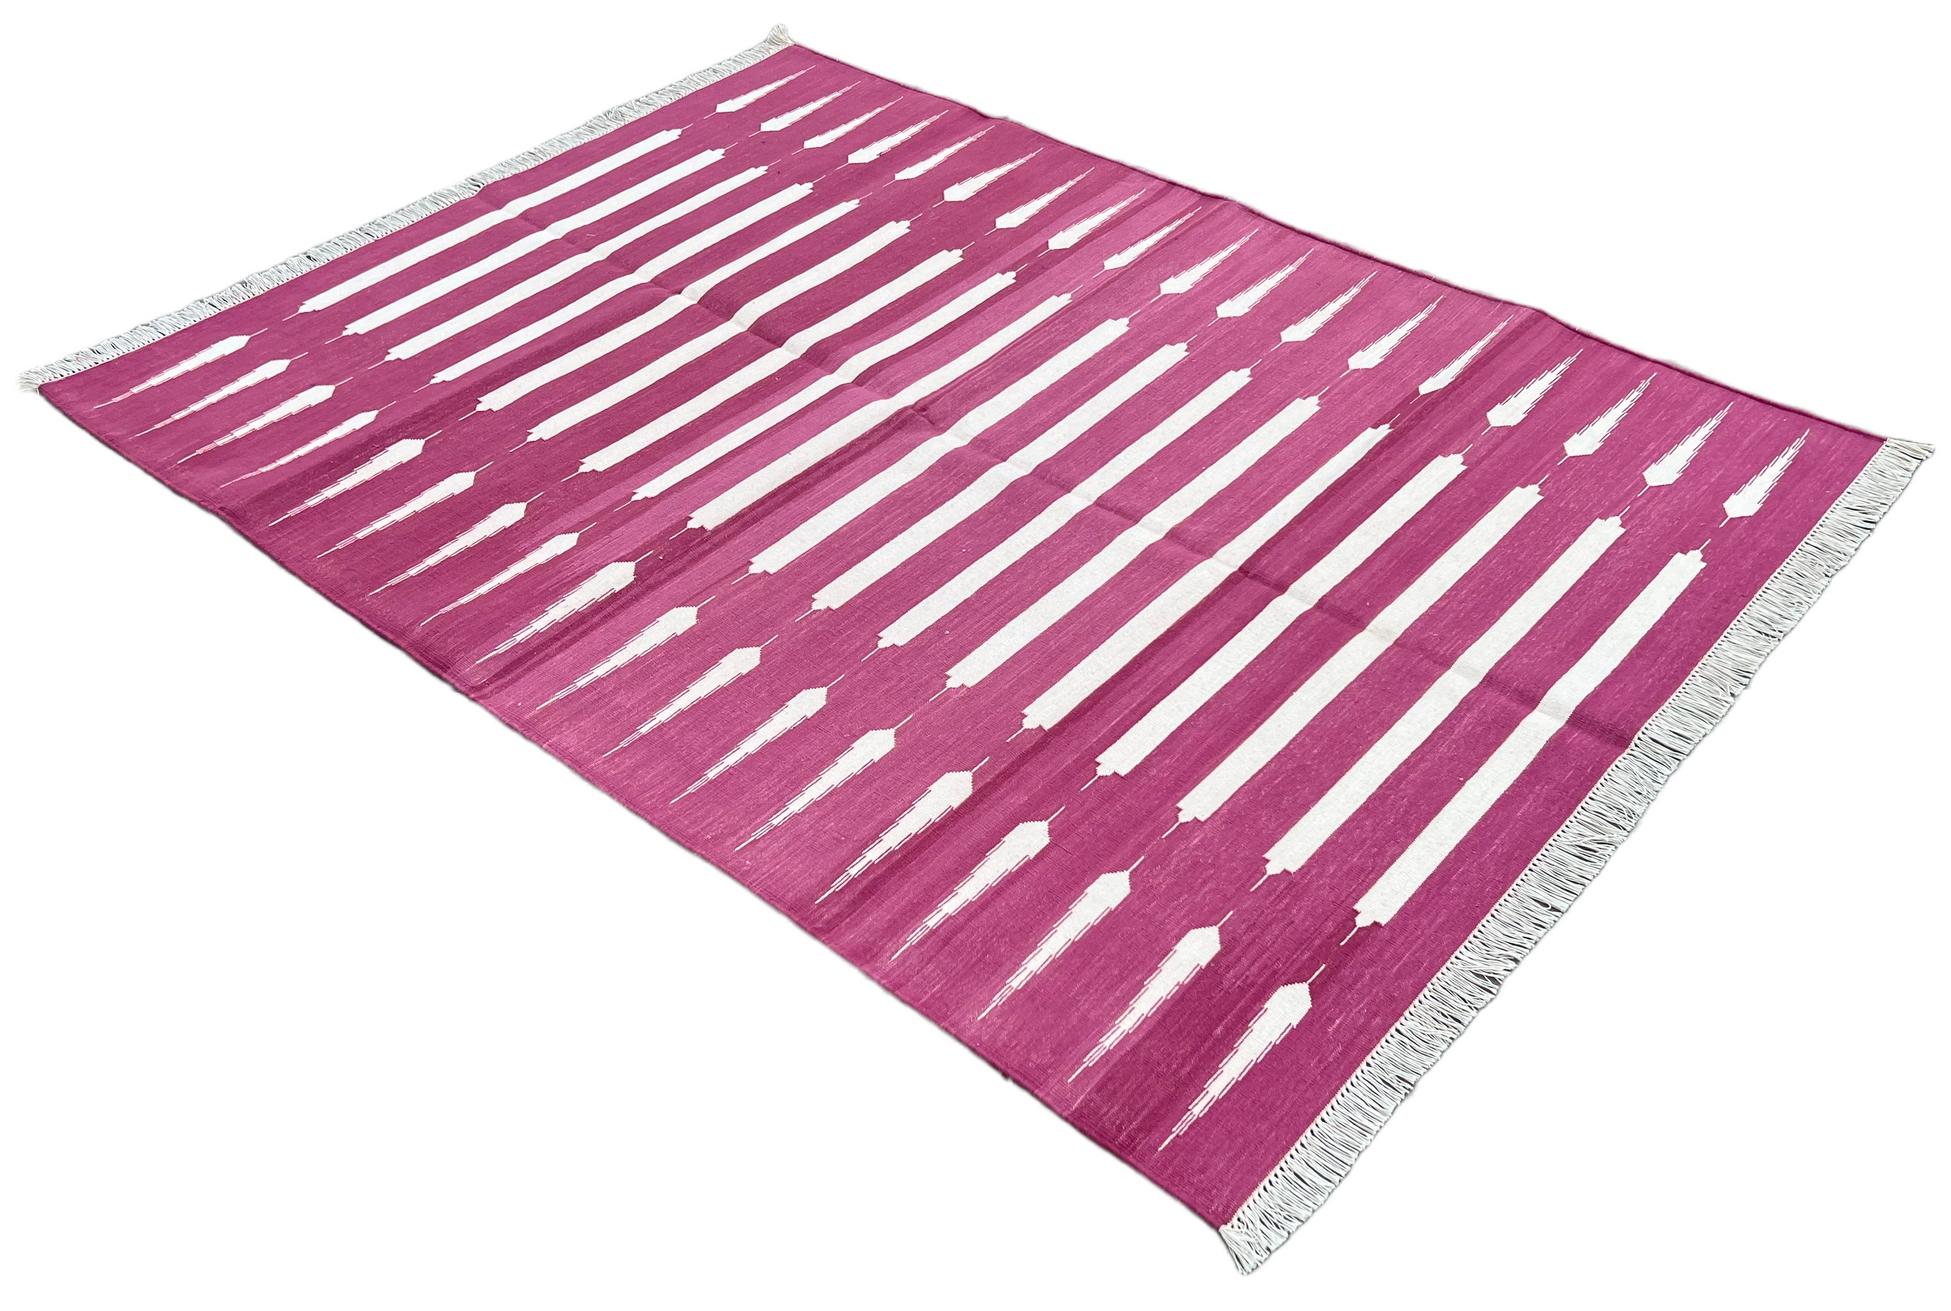 Baumwolle pflanzlich gefärbt rosa und weiß gestreift indischen Dhurrie Teppich-4'x6' 
Diese speziellen flachgewebten Dhurries werden aus 15-fachem Garn aus 100% Baumwolle handgewebt. Aufgrund der speziellen Fertigungstechniken, die zur Herstellung